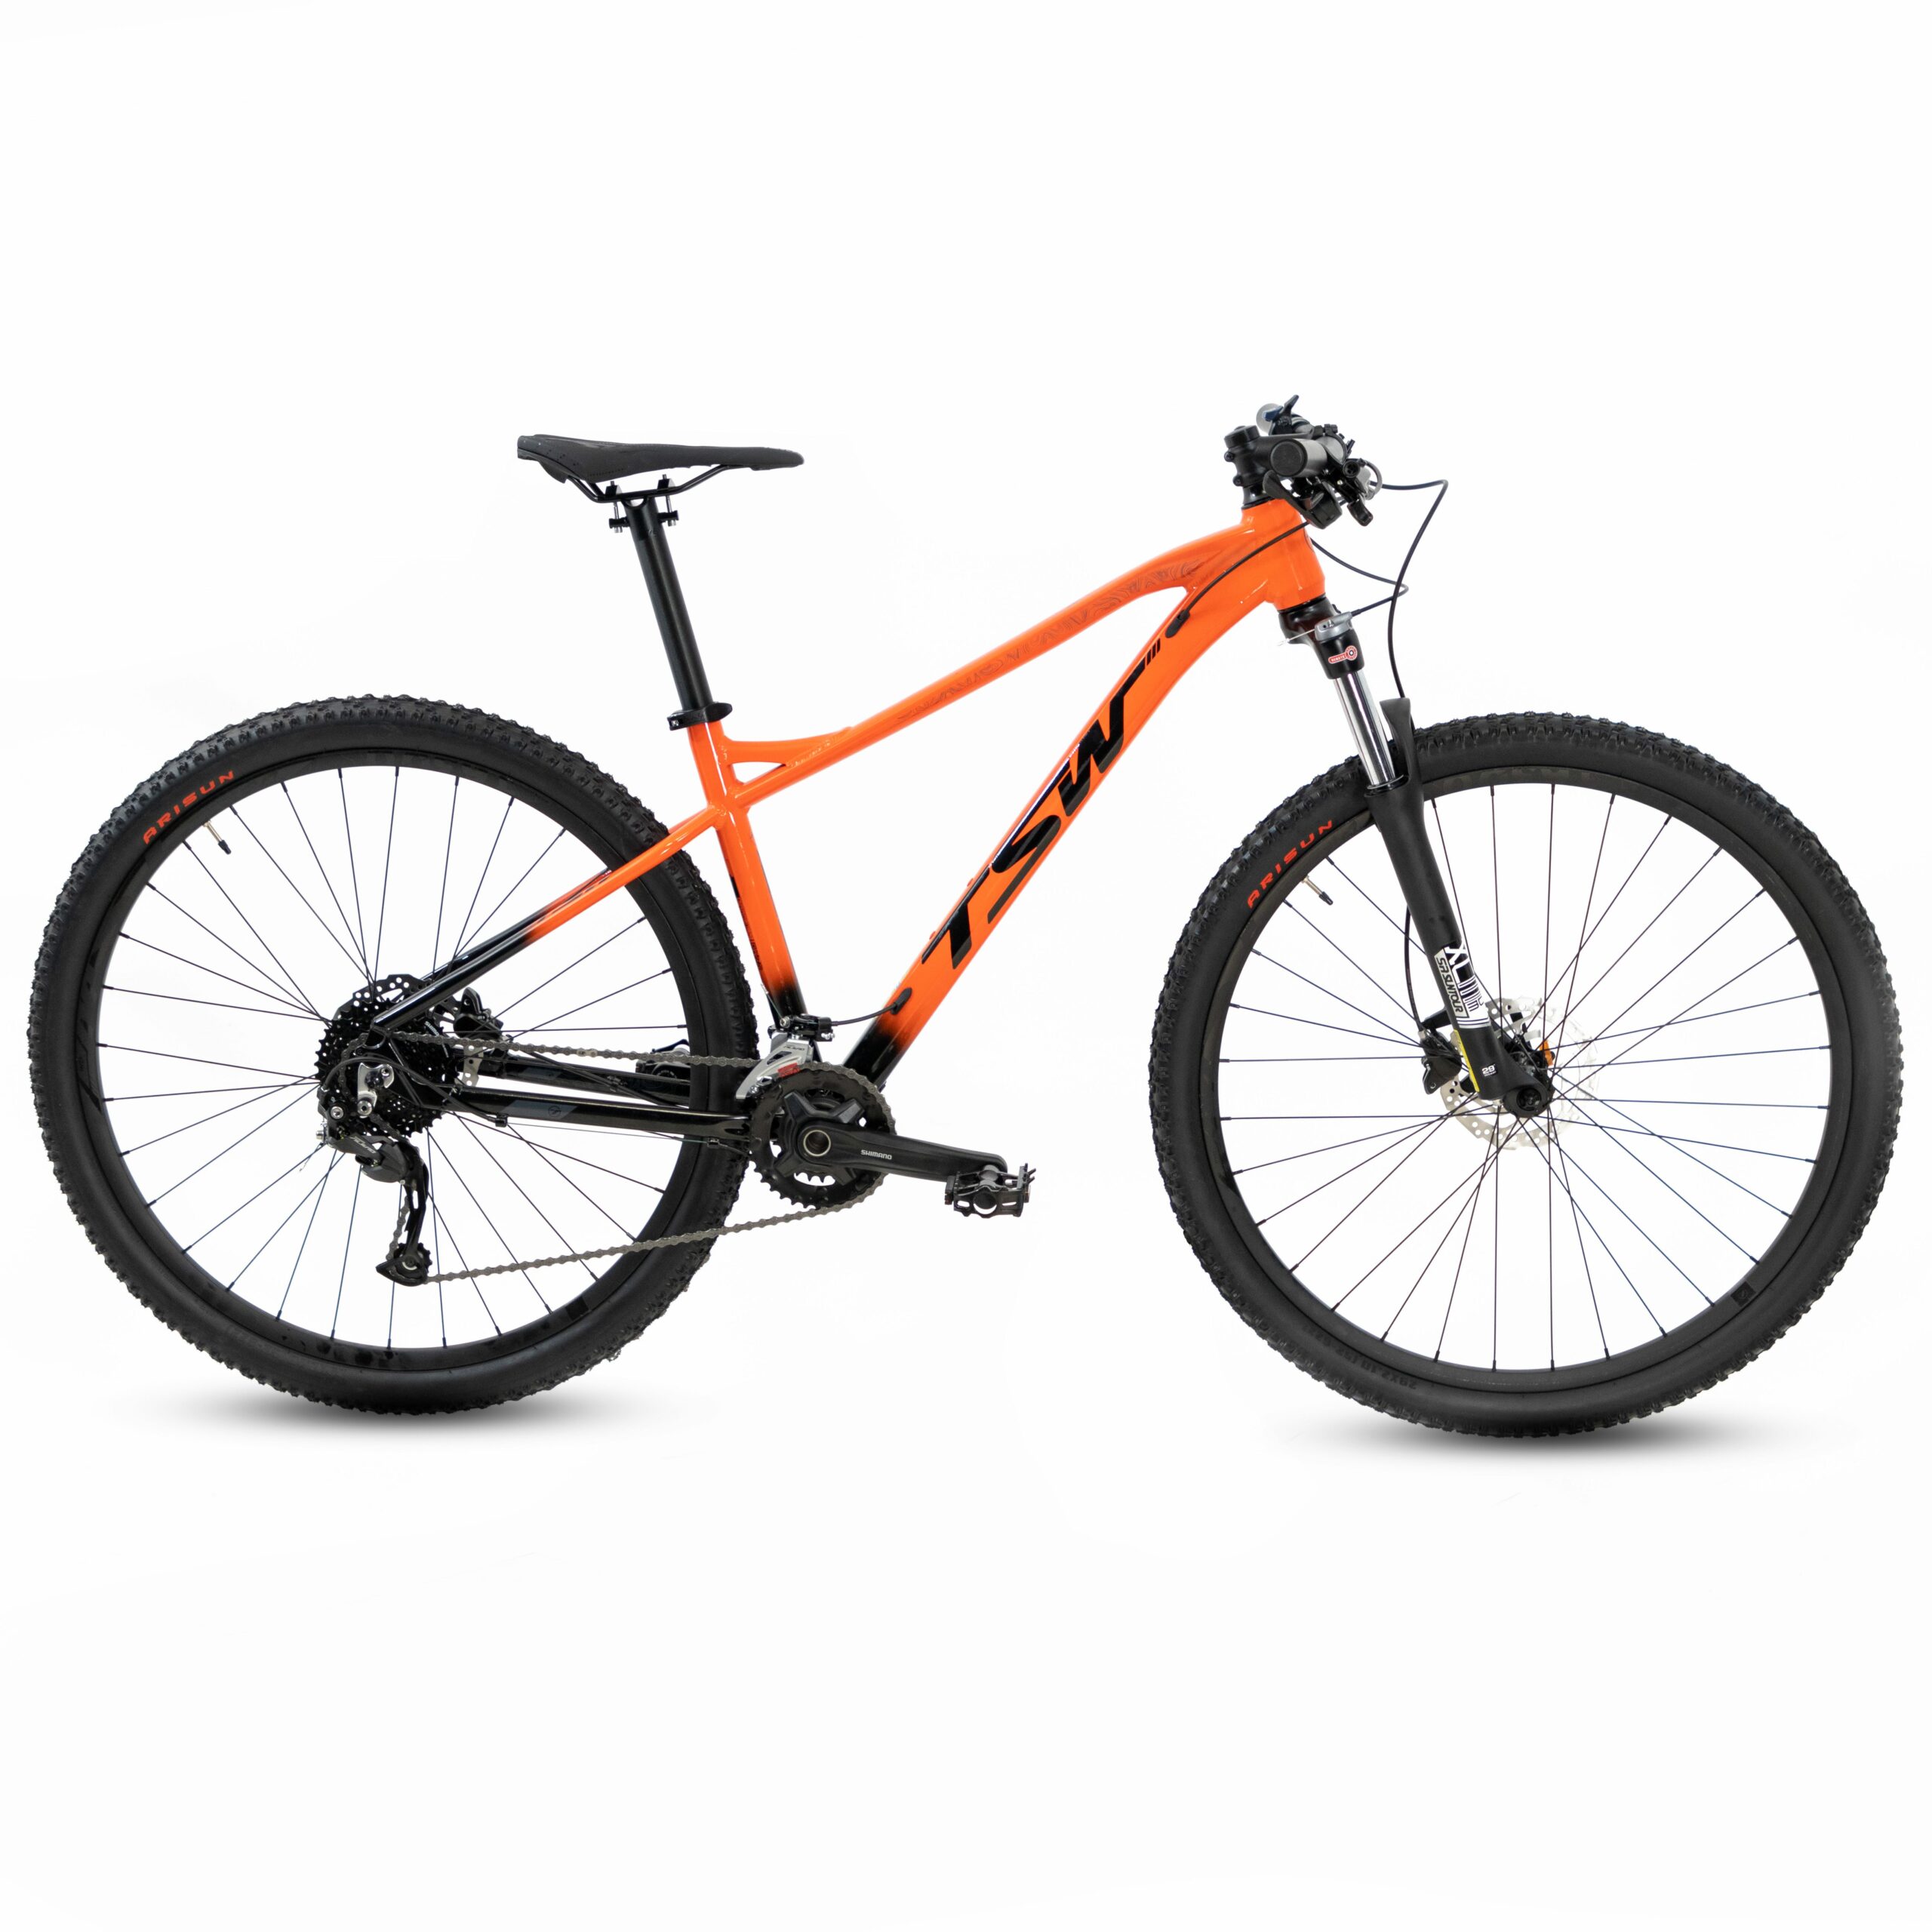 Bicicleta TSW Stamina | 2021/2022 - 15.5", Laranja/Preto